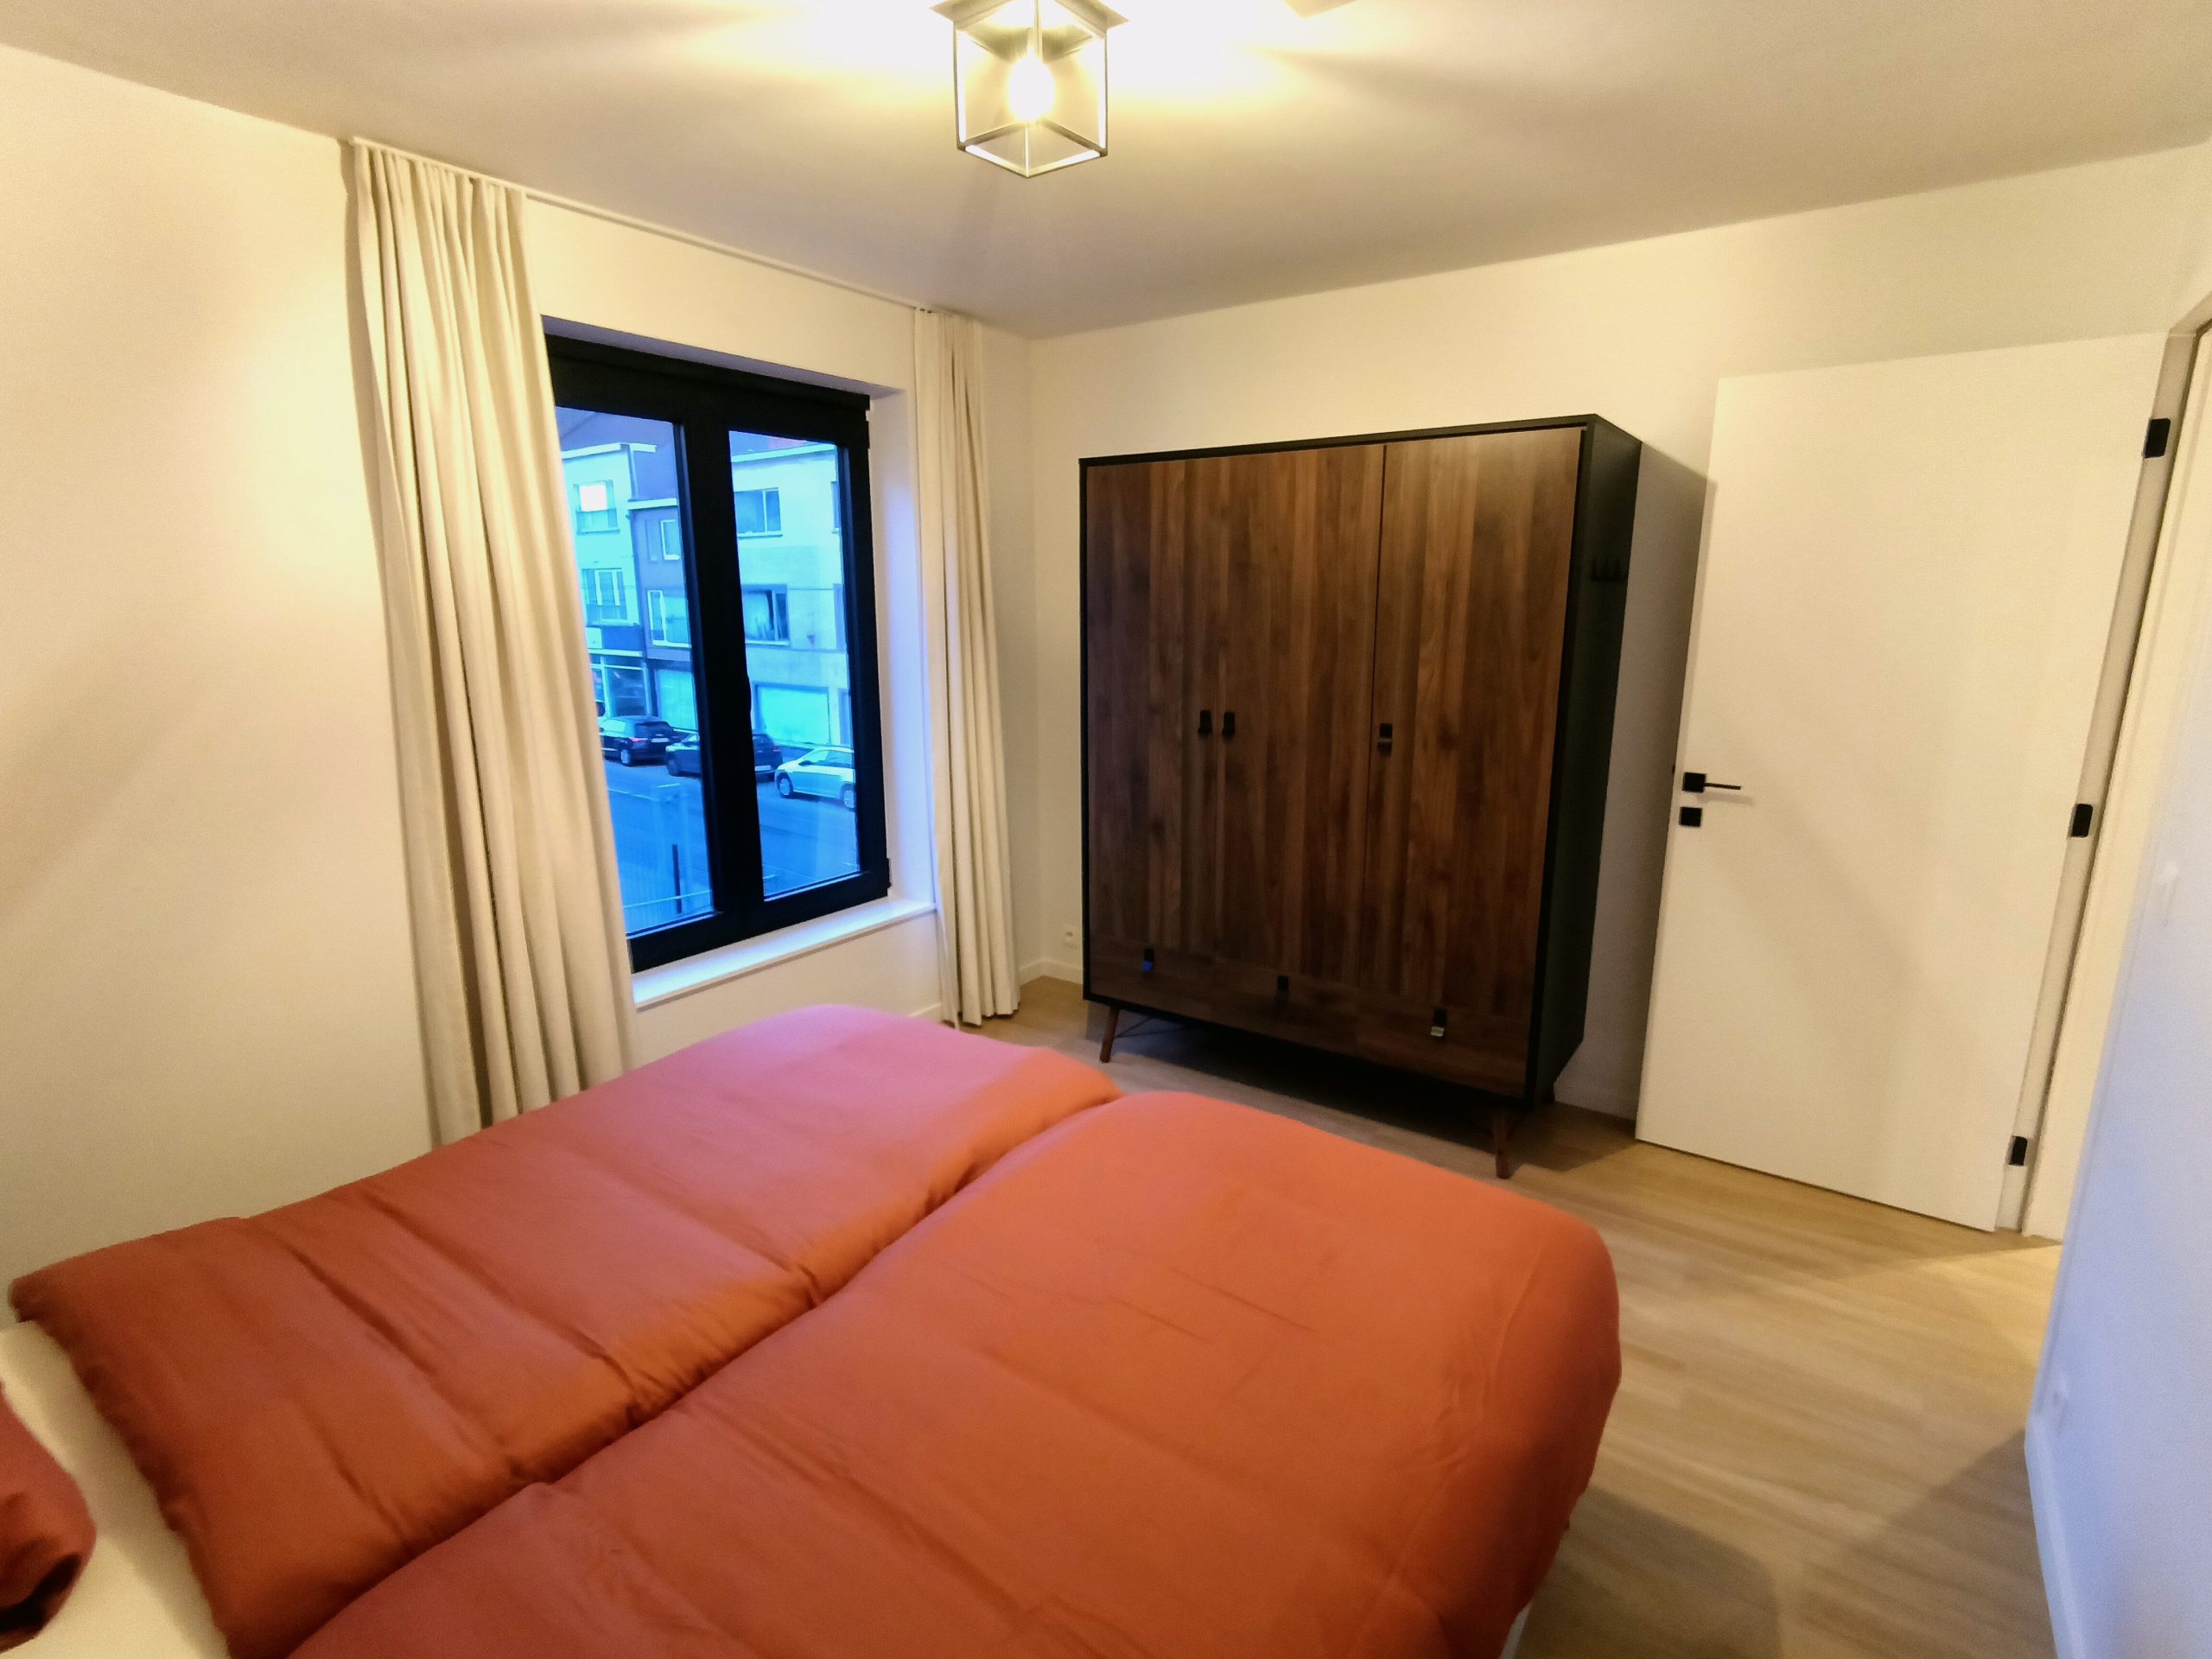 Salvatore - 2 Bedrooms apartment for rent in Ghent bedroom 4